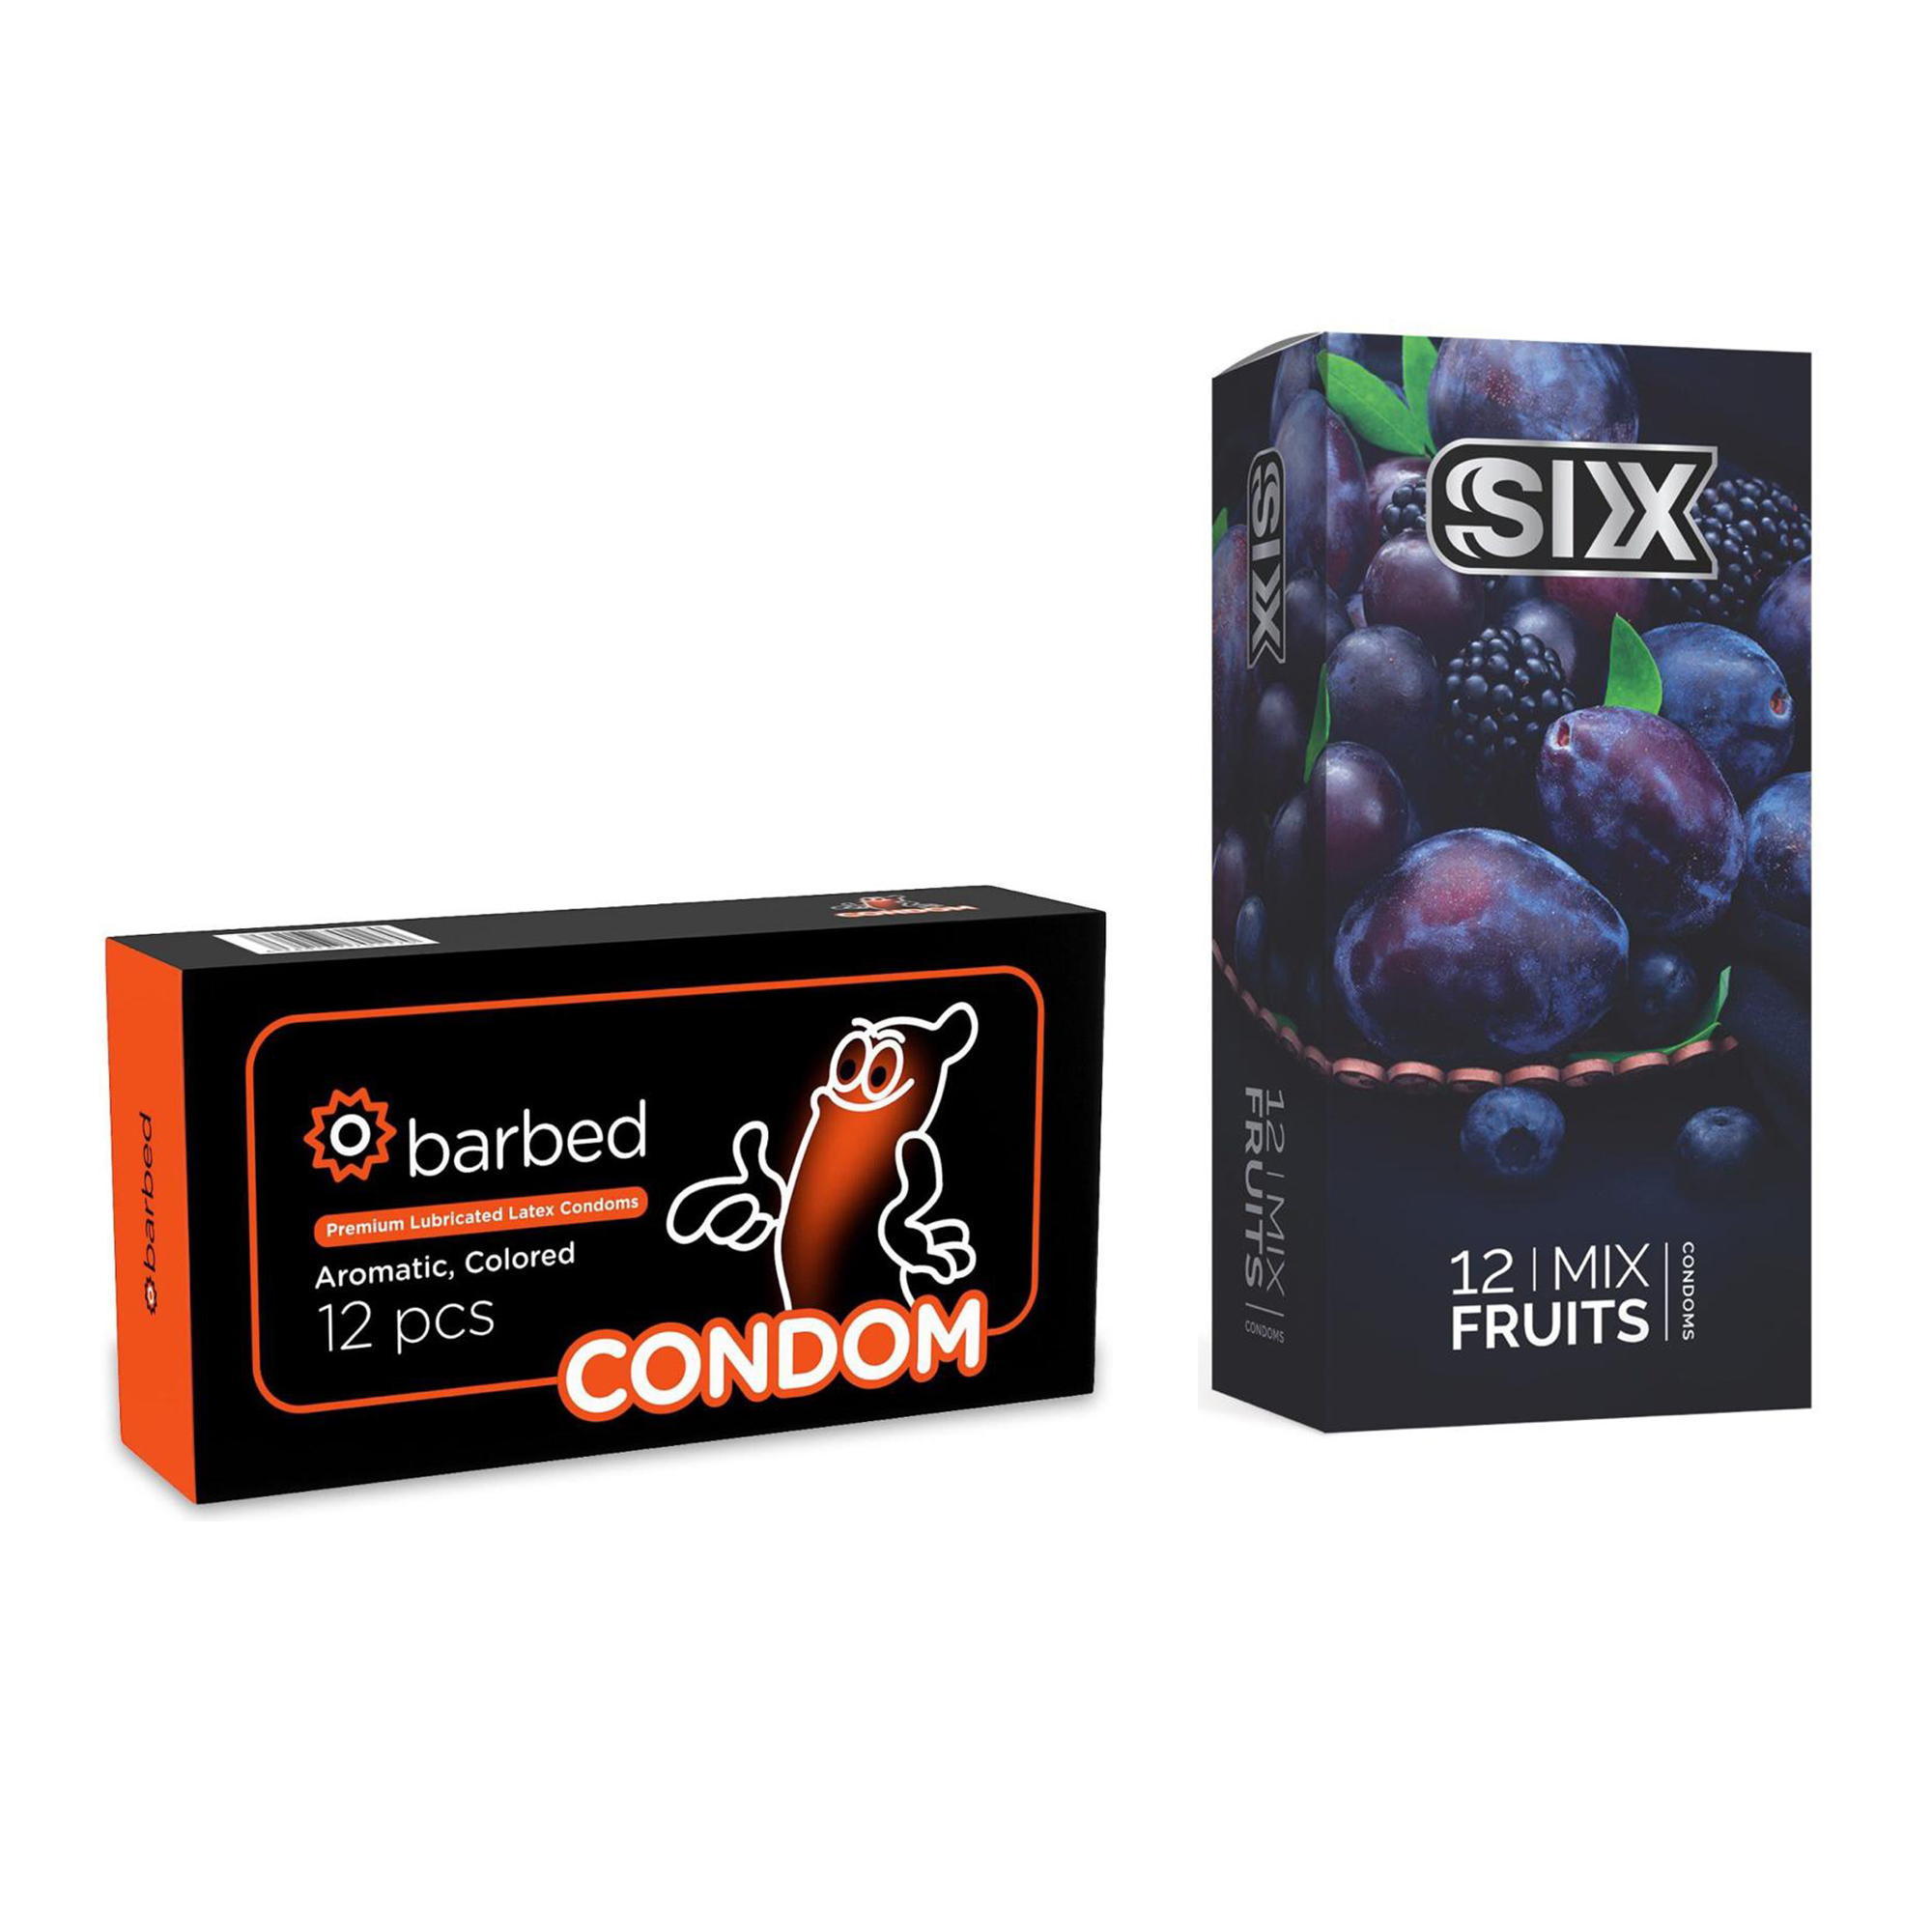 کاندوم سیکس مدل Mix Fruits بسته 12 عددی به همراه کاندوم کاندوم مدل Barbed بسته 12 عددی